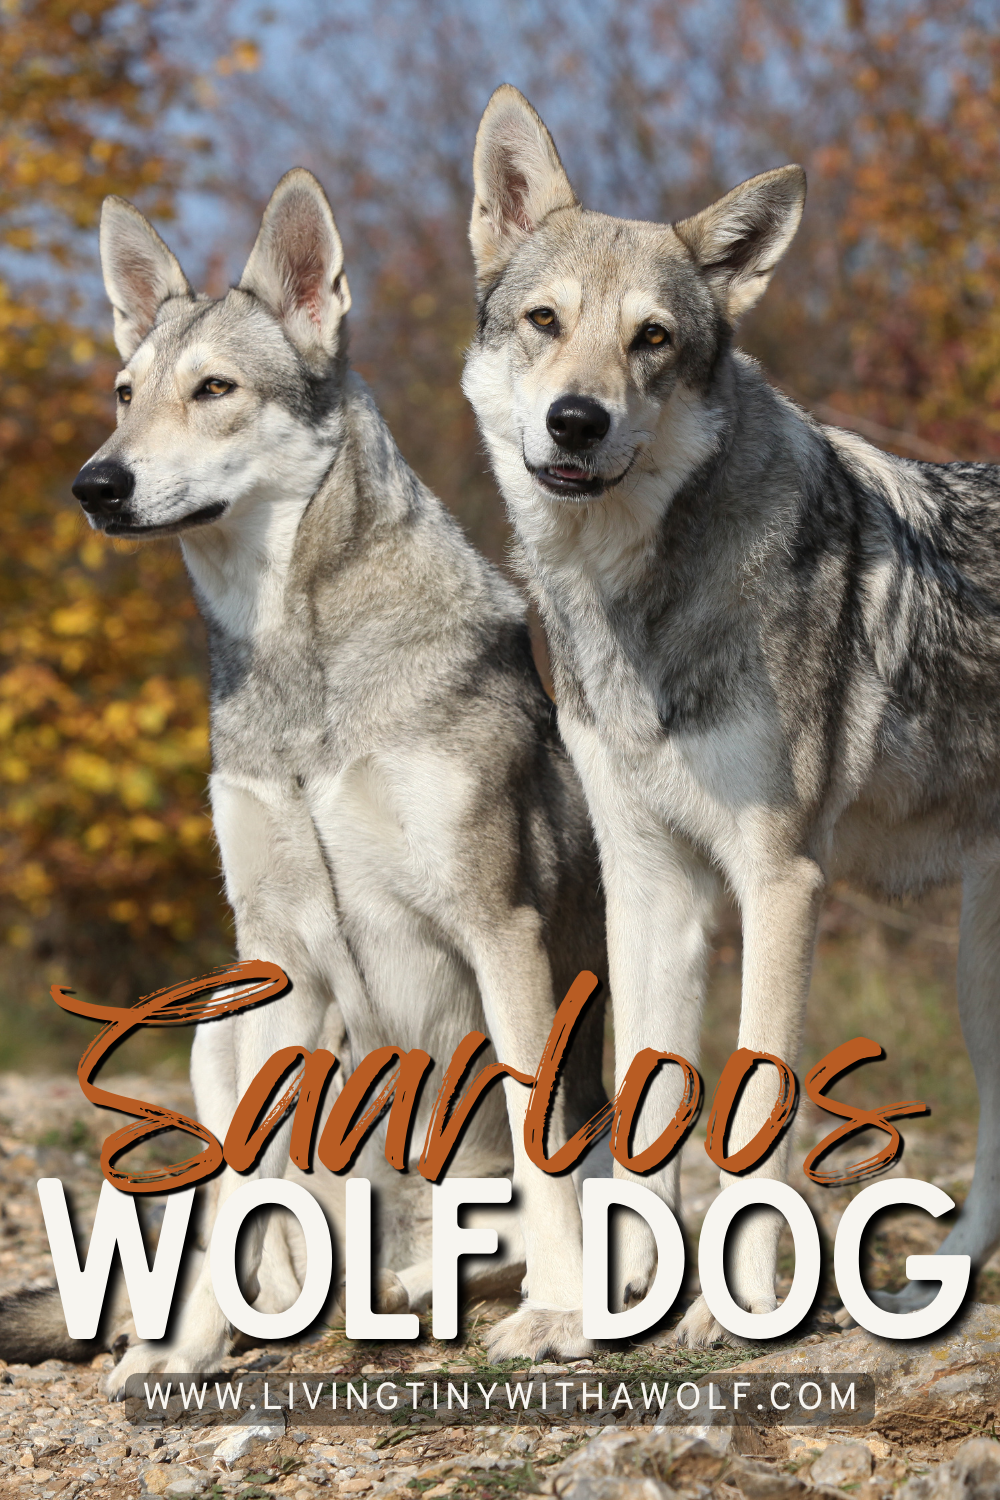 Saarloos Wolf Dog (Origins, Traits + Care)